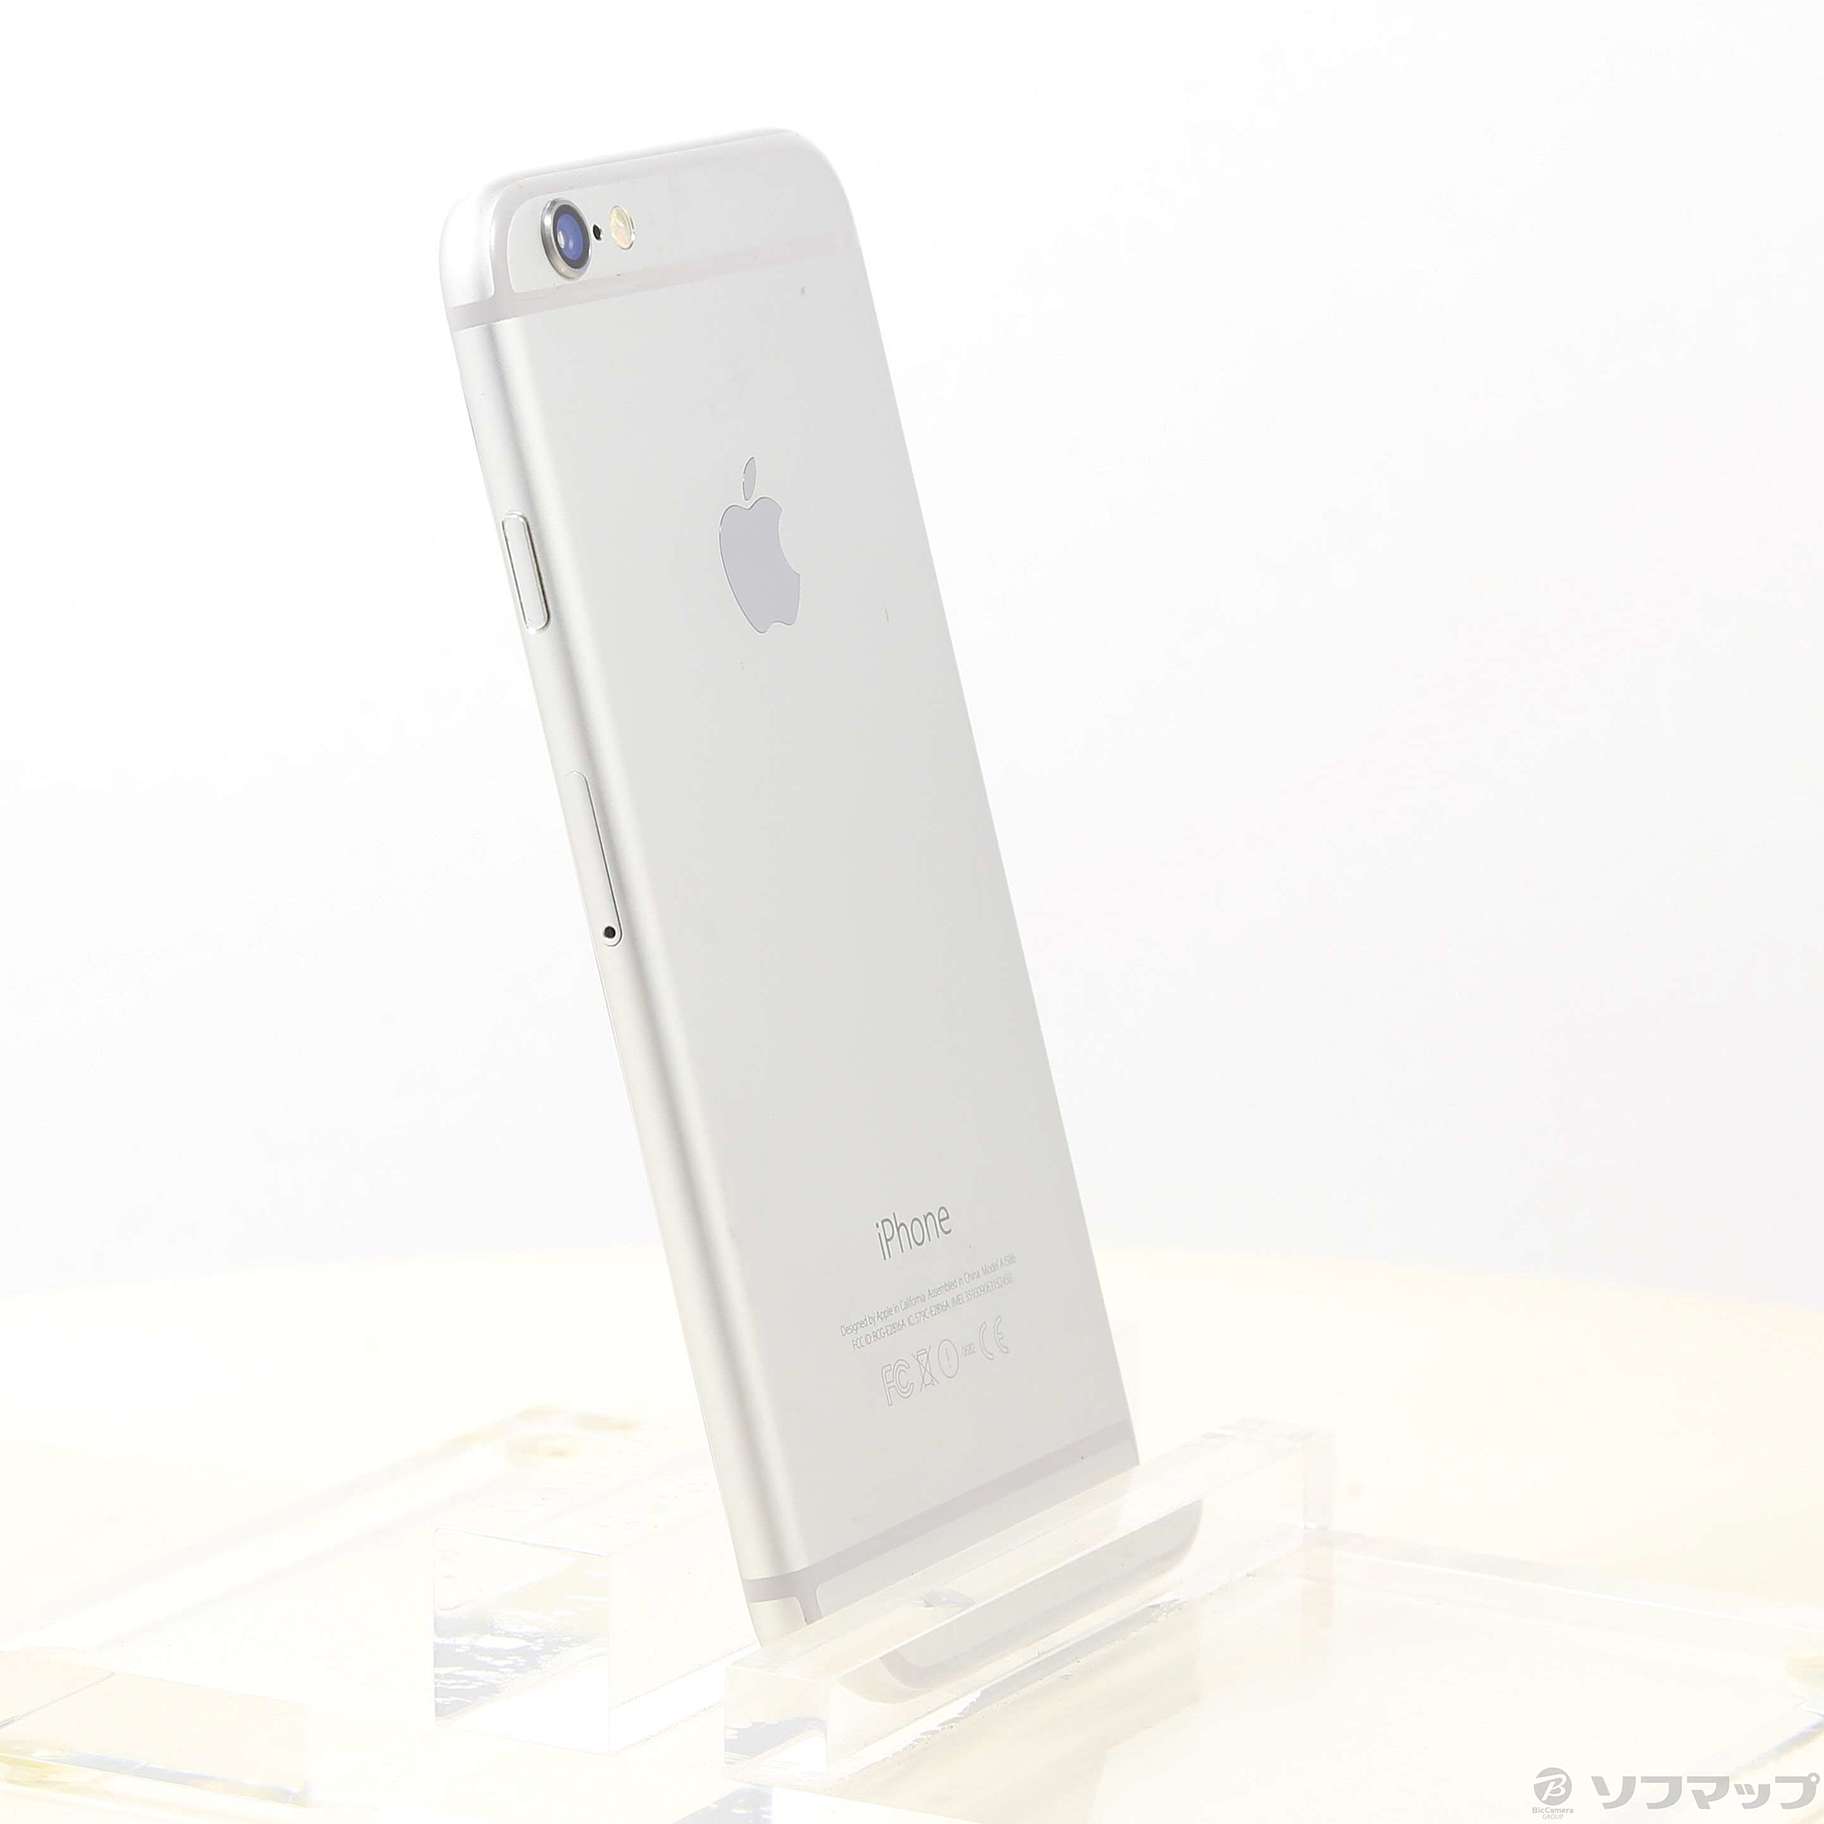 iPhone 6 Silver 64 GB docomo